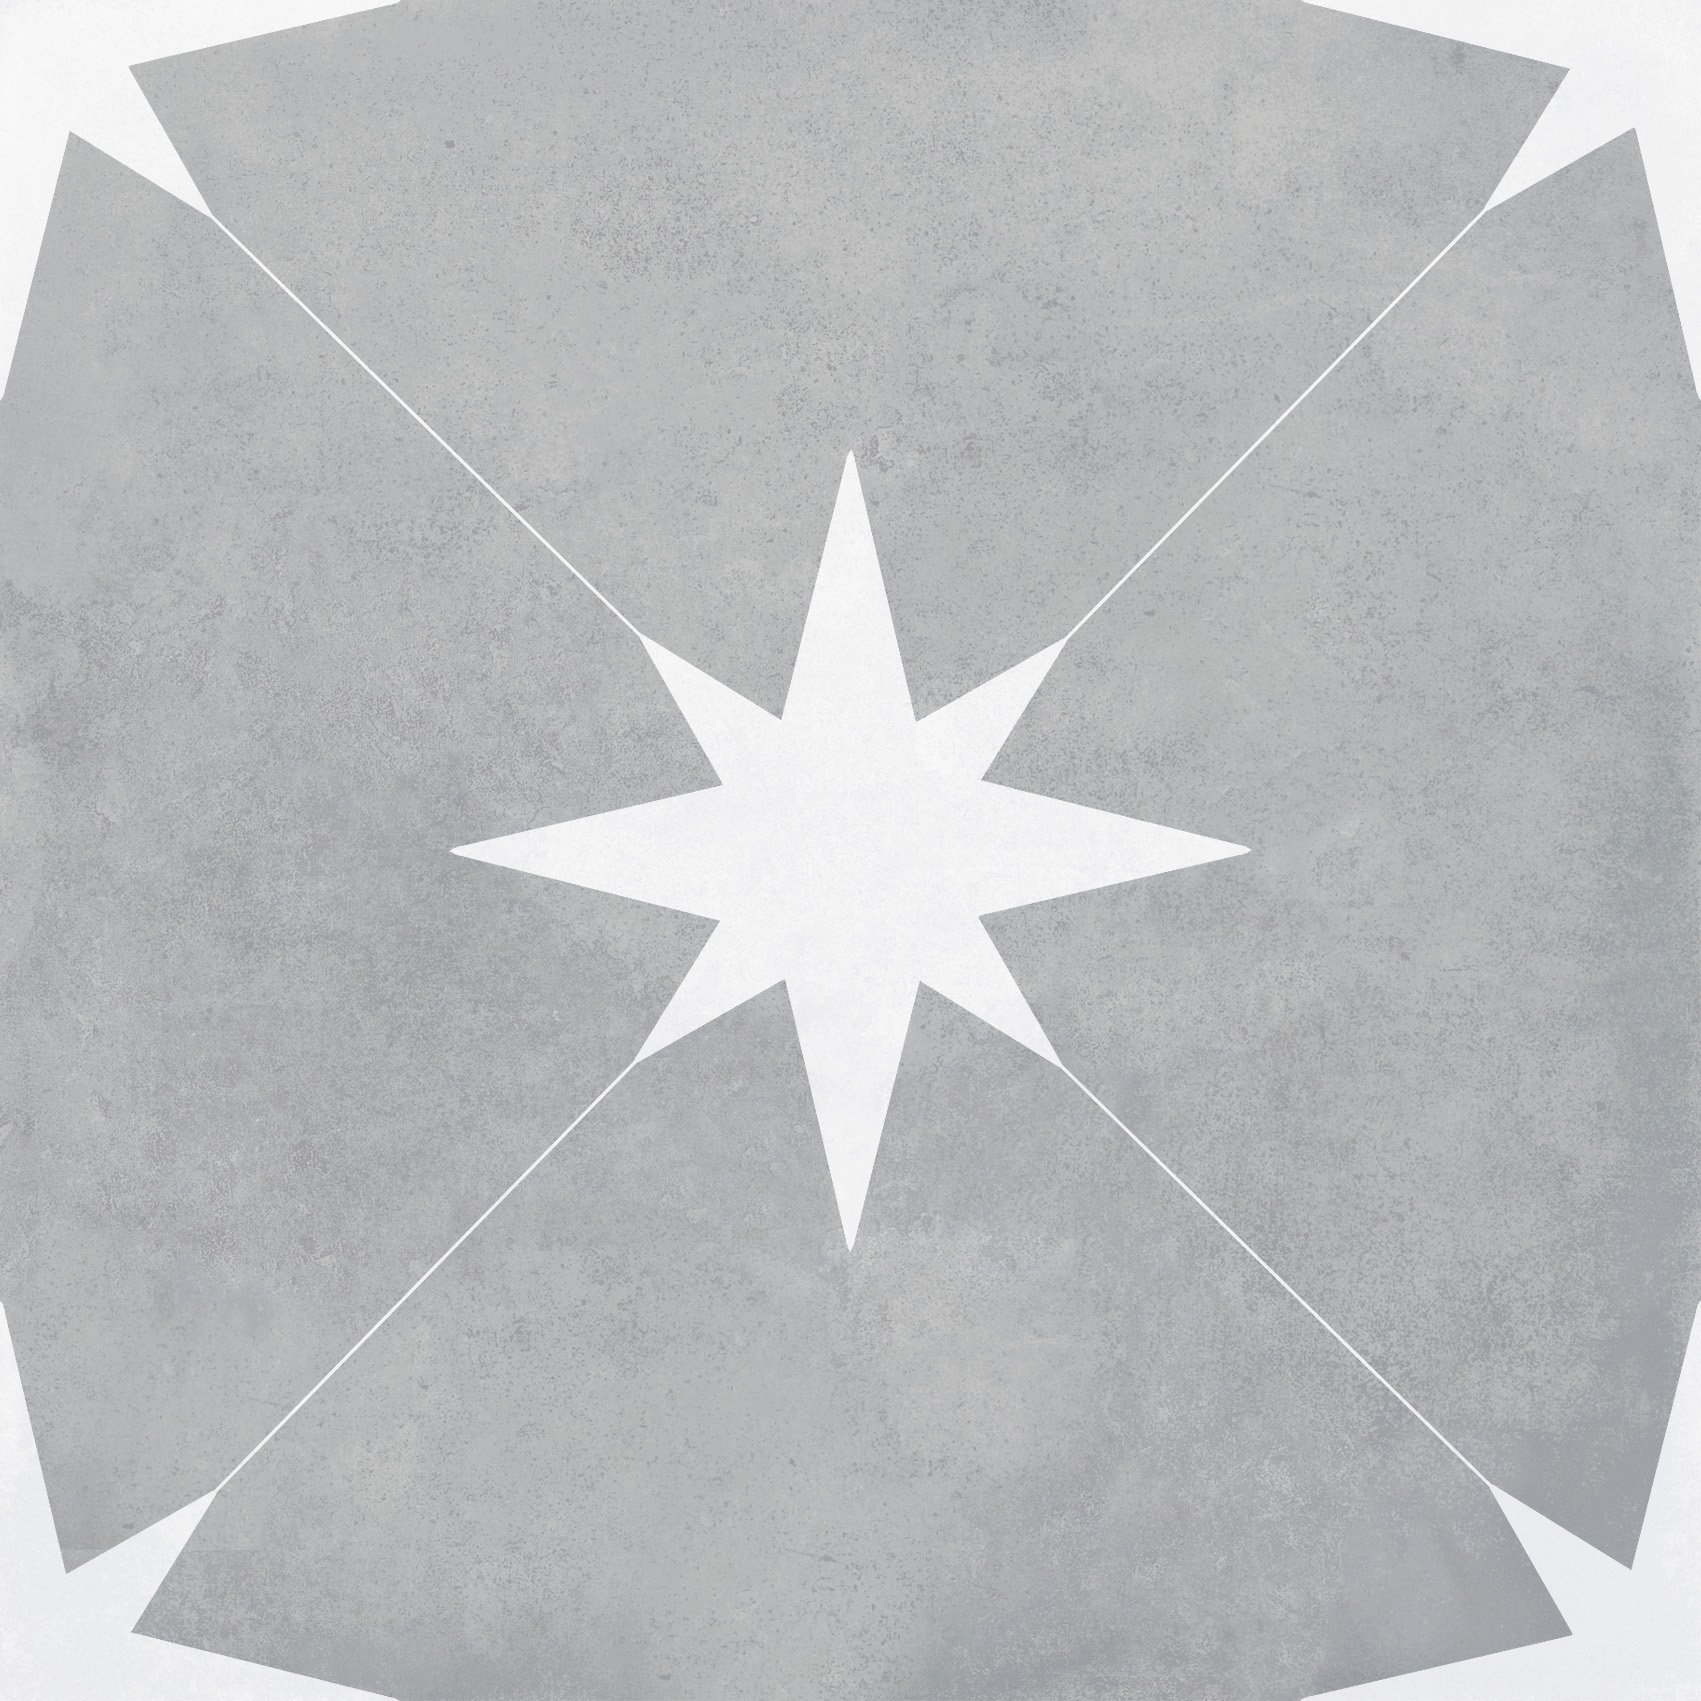 Retro-Fliese Sternenmuster Ponent grey graue Sterne Bodenfliesen Wandfliesen grau weiss